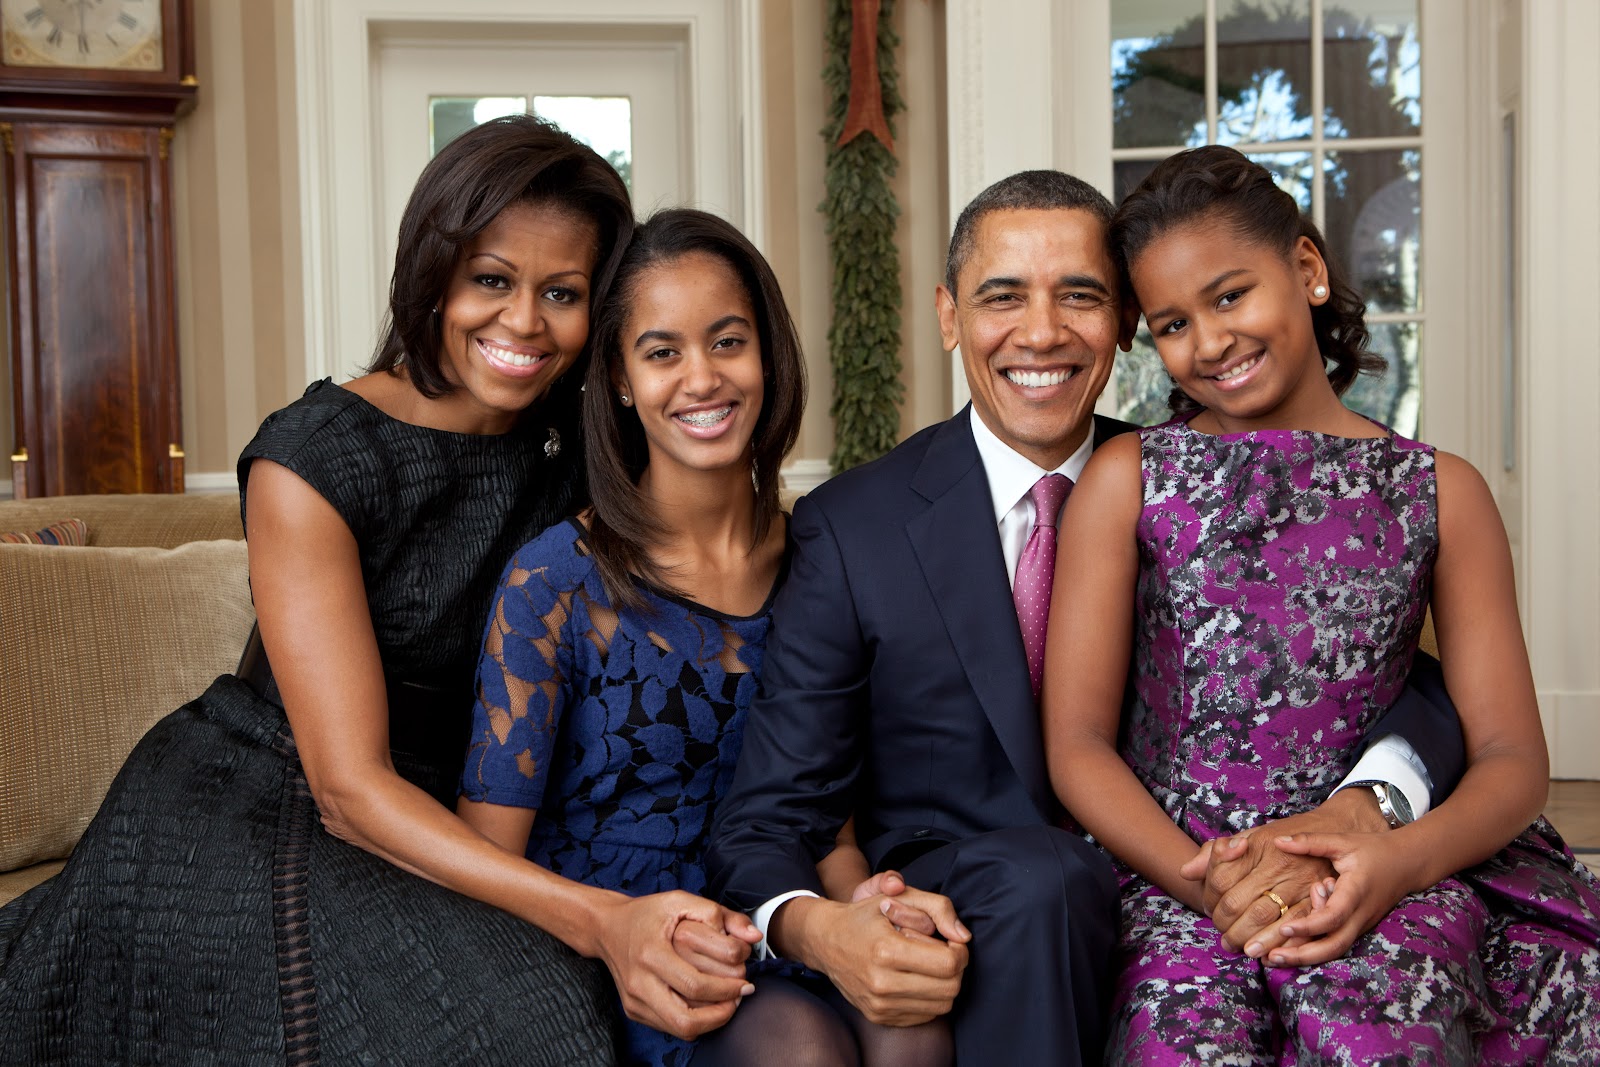 https://upload.wikimedia.org/wikipedia/commons/5/5d/Barack_Obama_family_portrait_2011.jpg